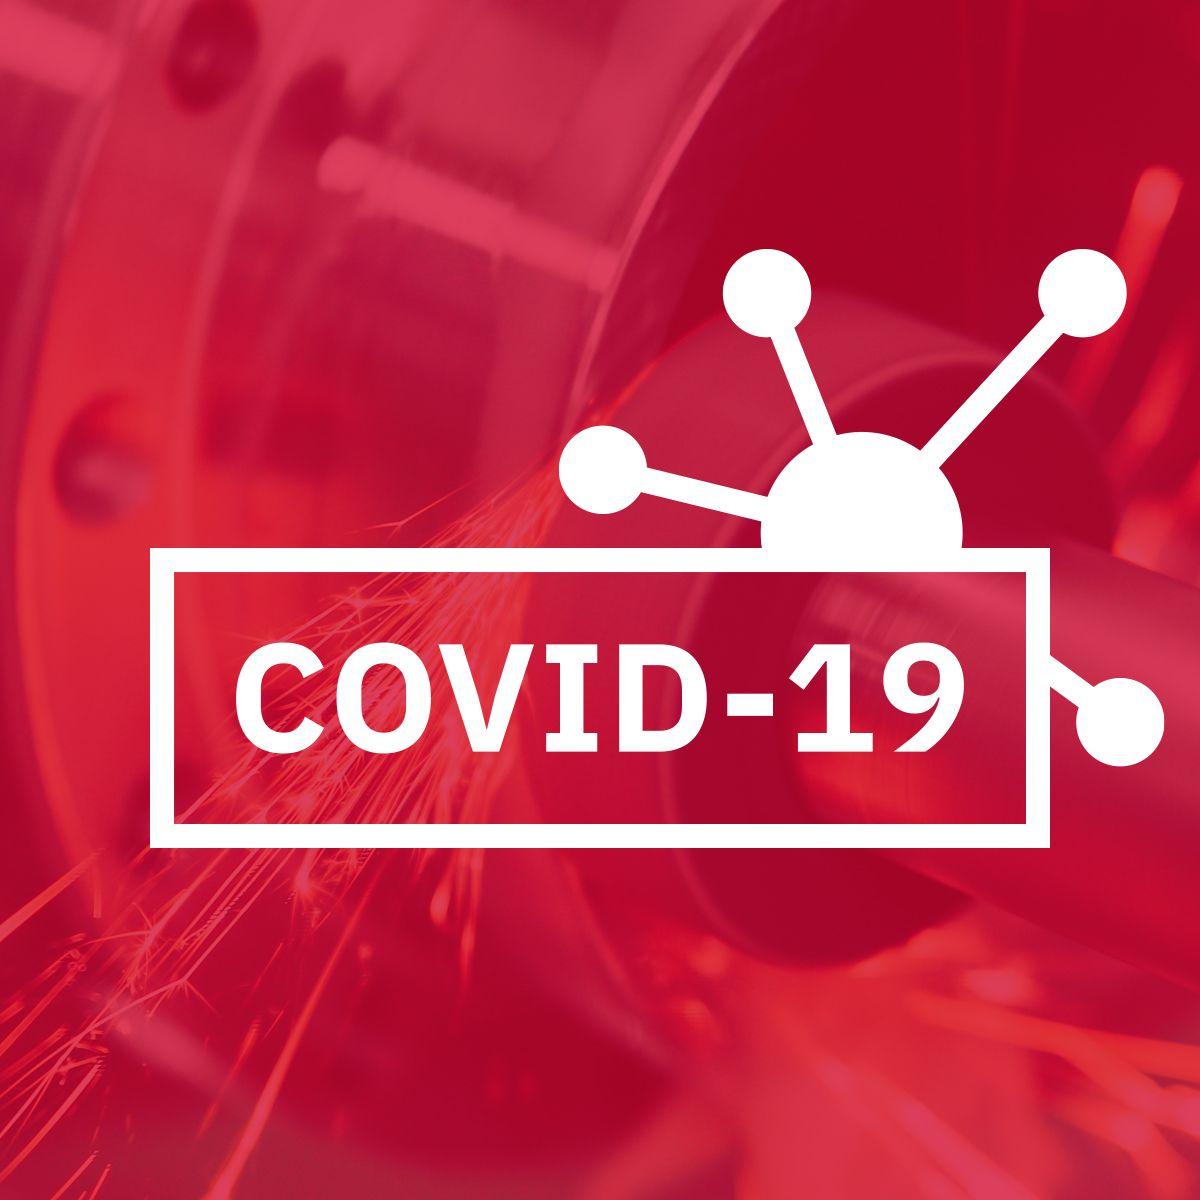 免费在线课程提供COVID-19工作场所安全指南